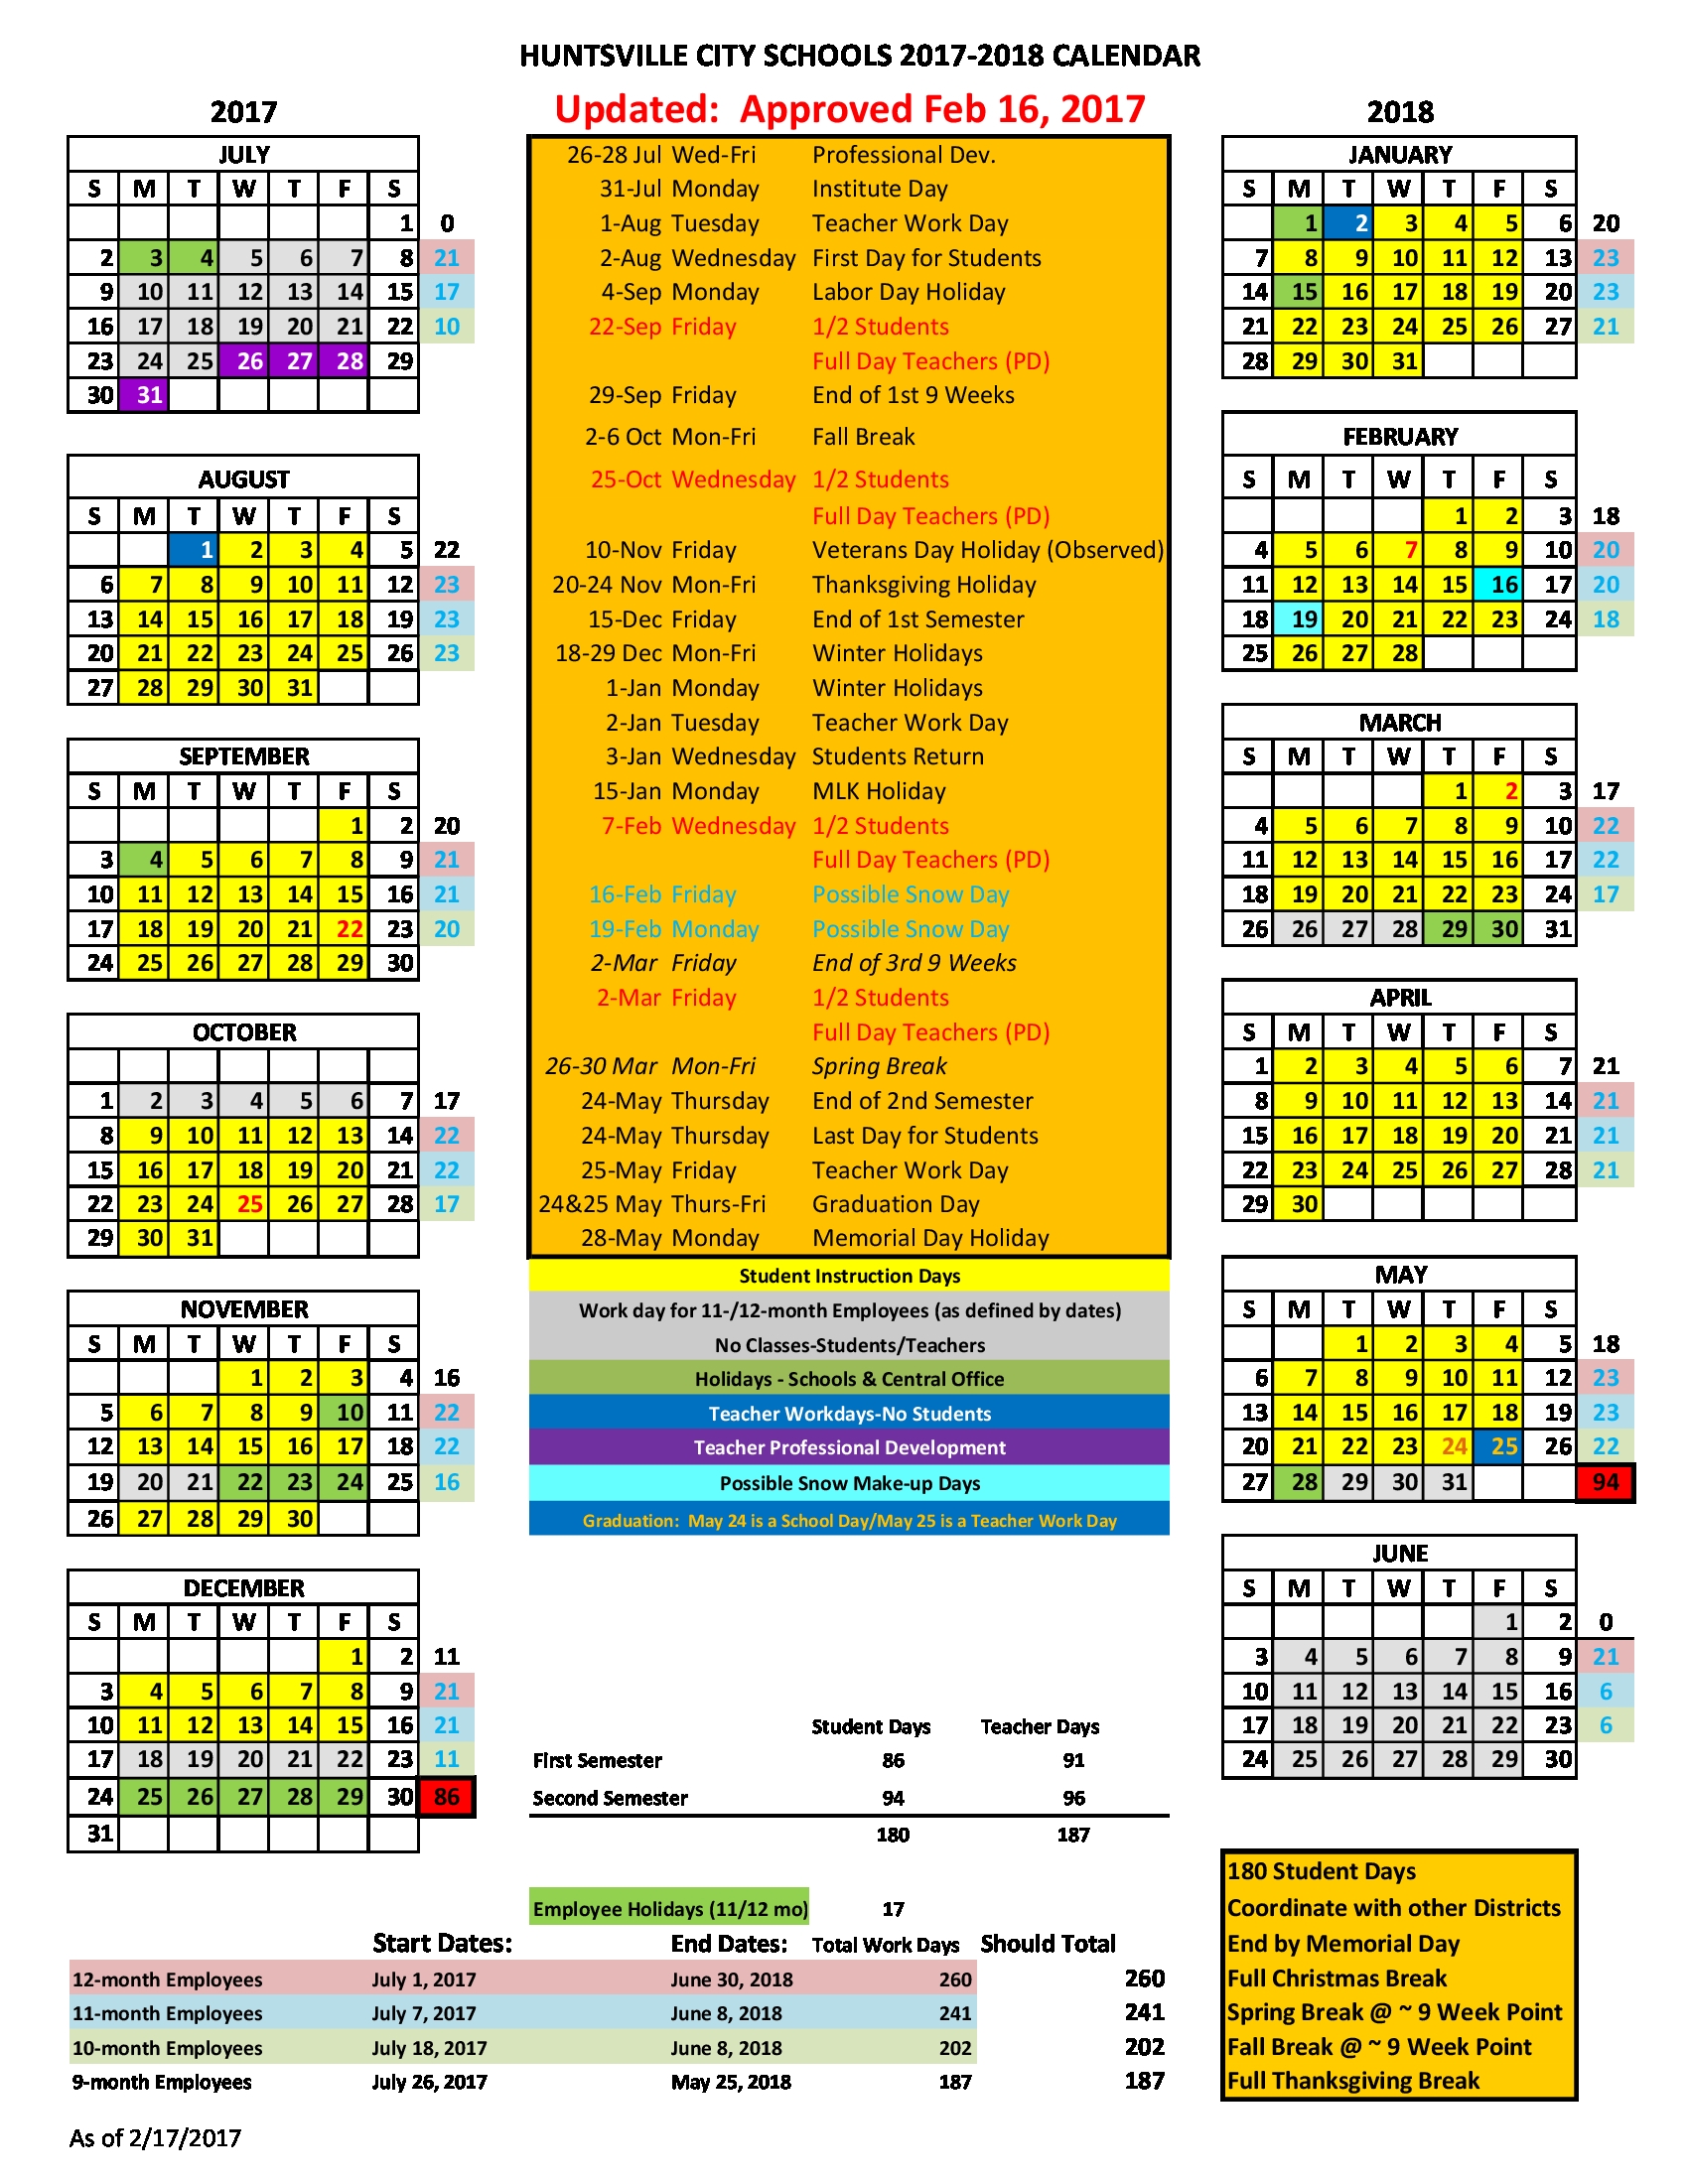 Huntsville City Schools Calendar 2017 2018 Bazga Qualads